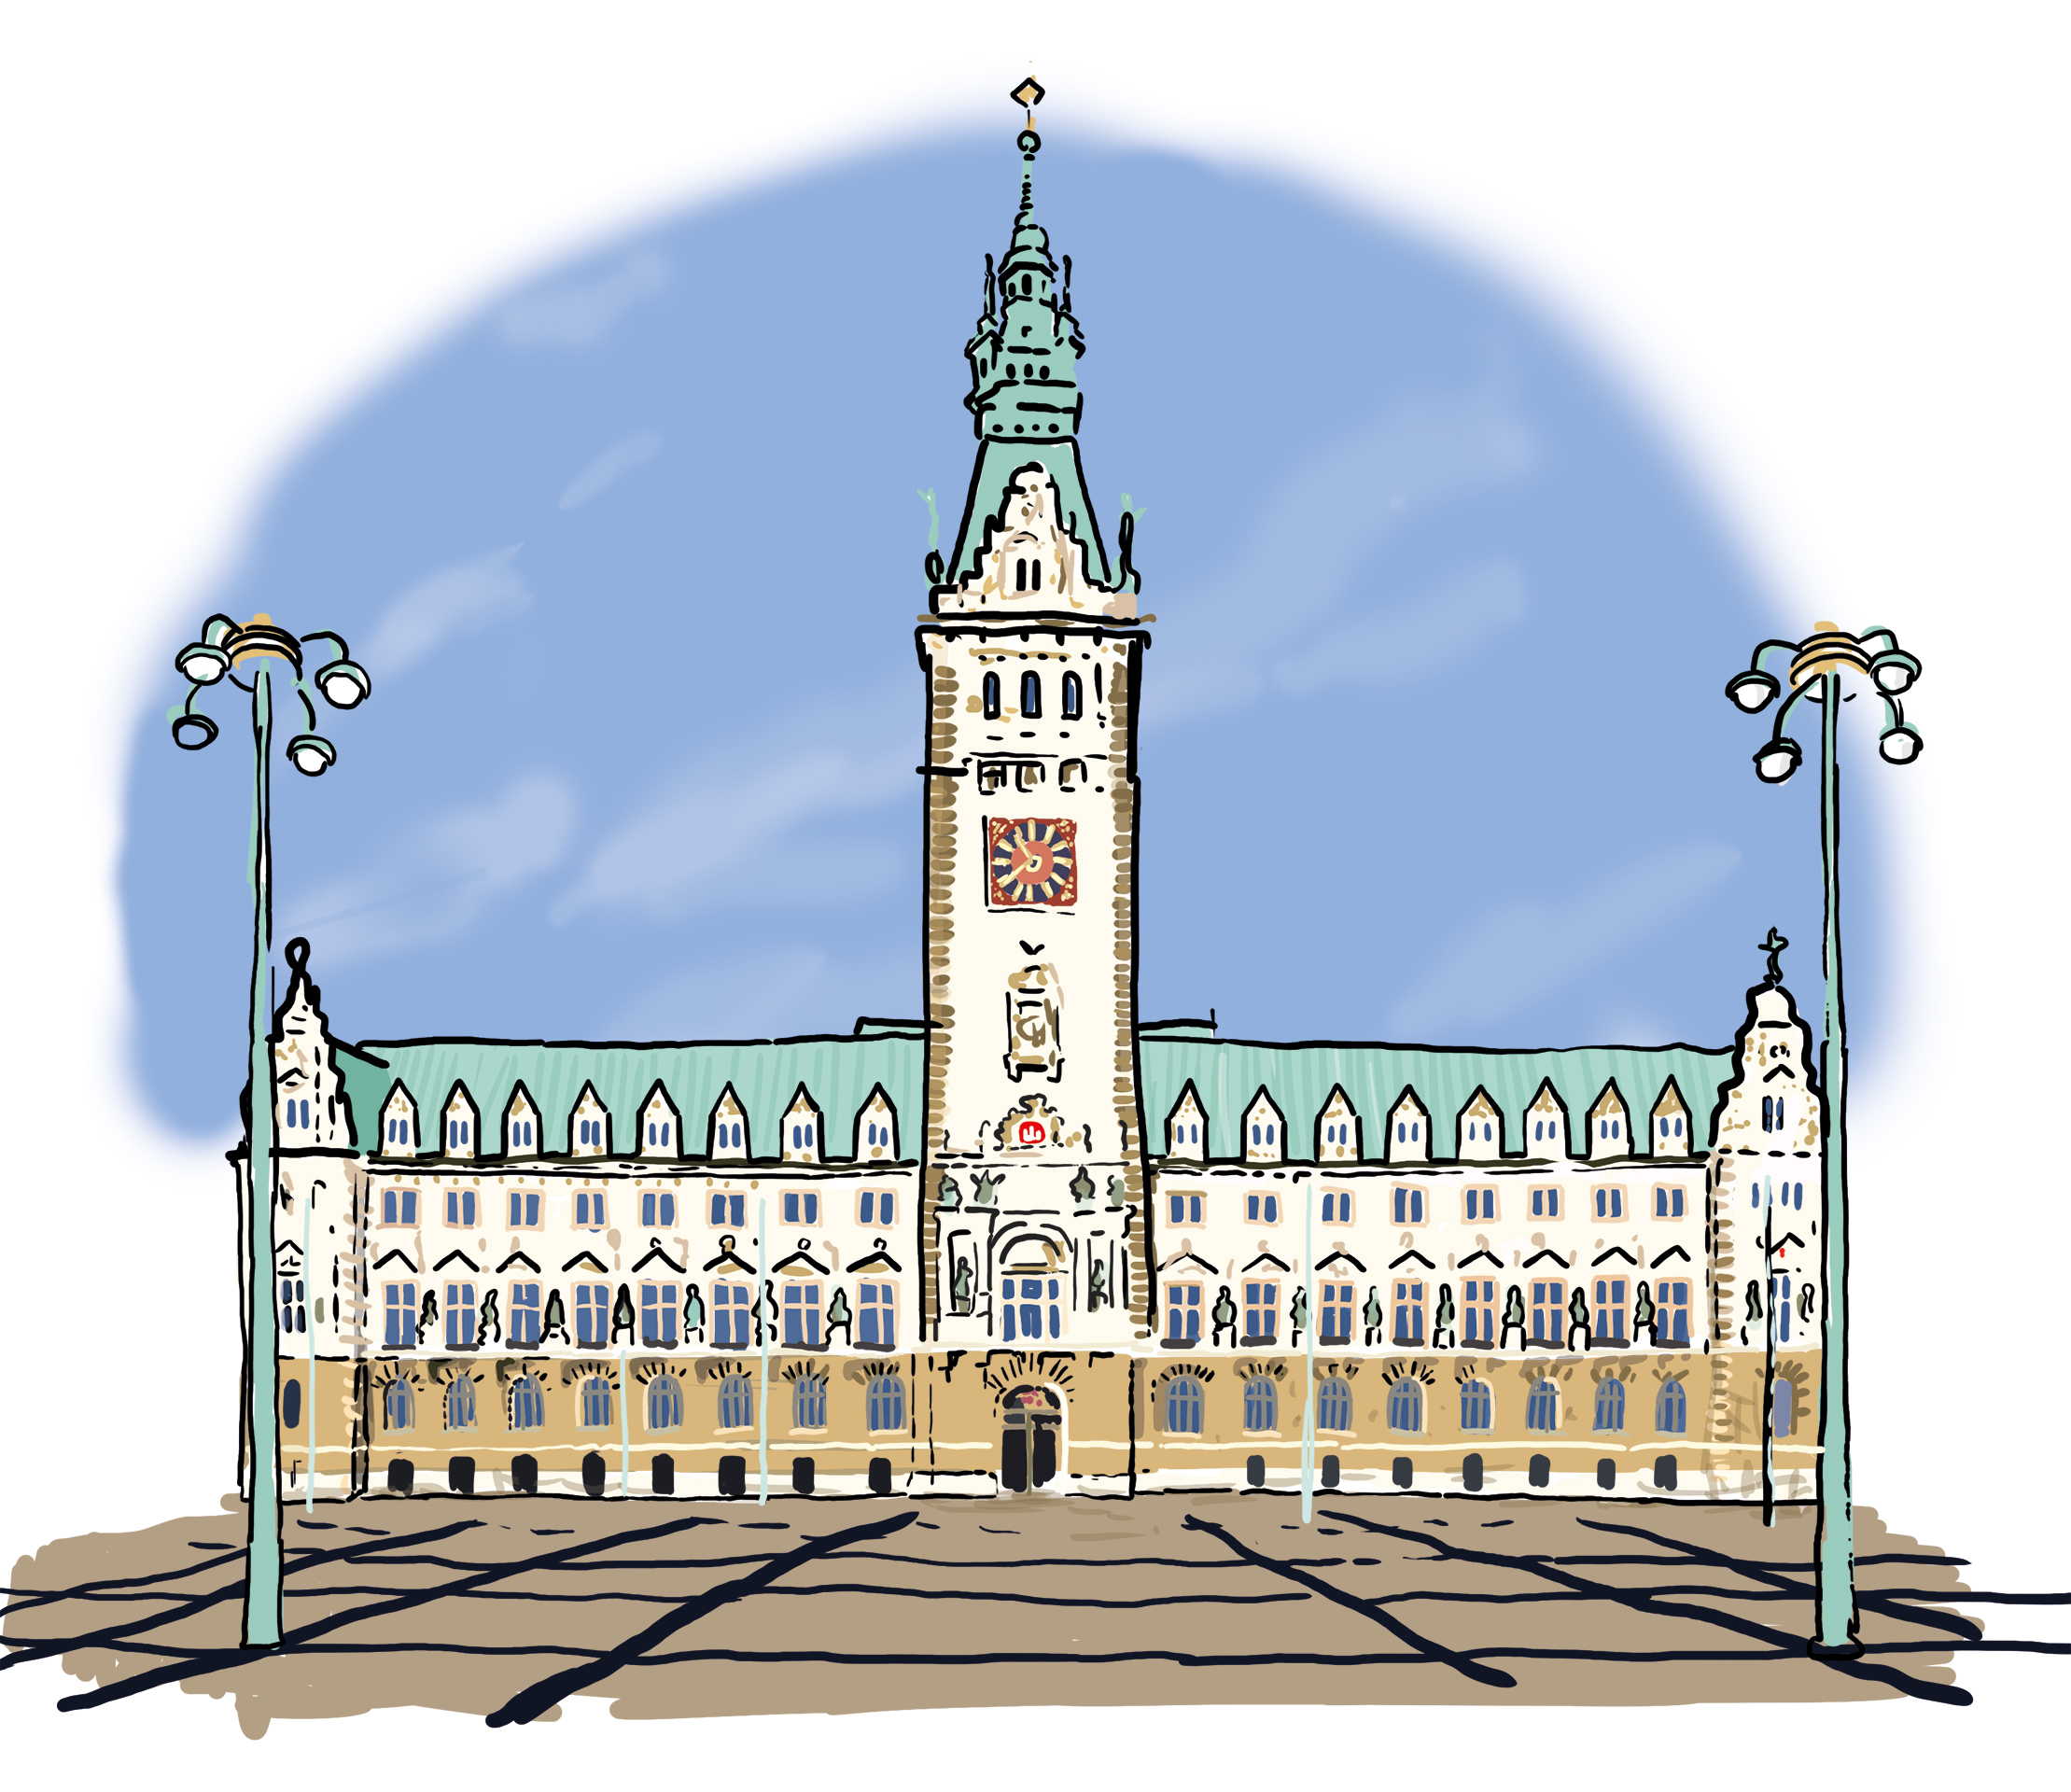 Das Rathaus in Hamburg